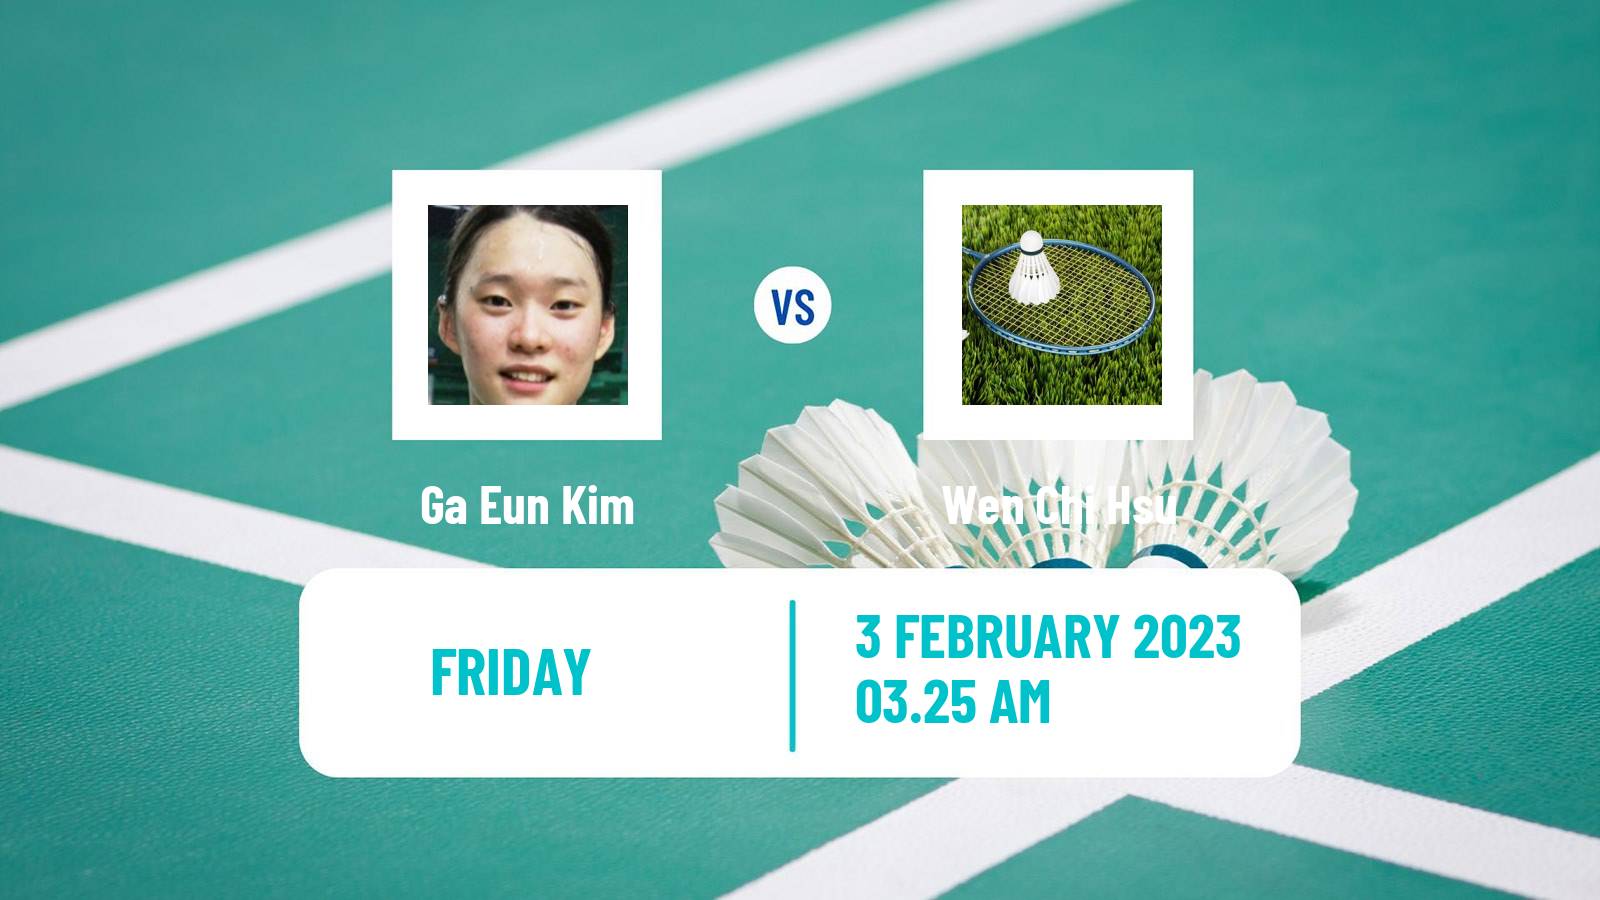 Badminton Badminton Ga Eun Kim - Wen Chi Hsu